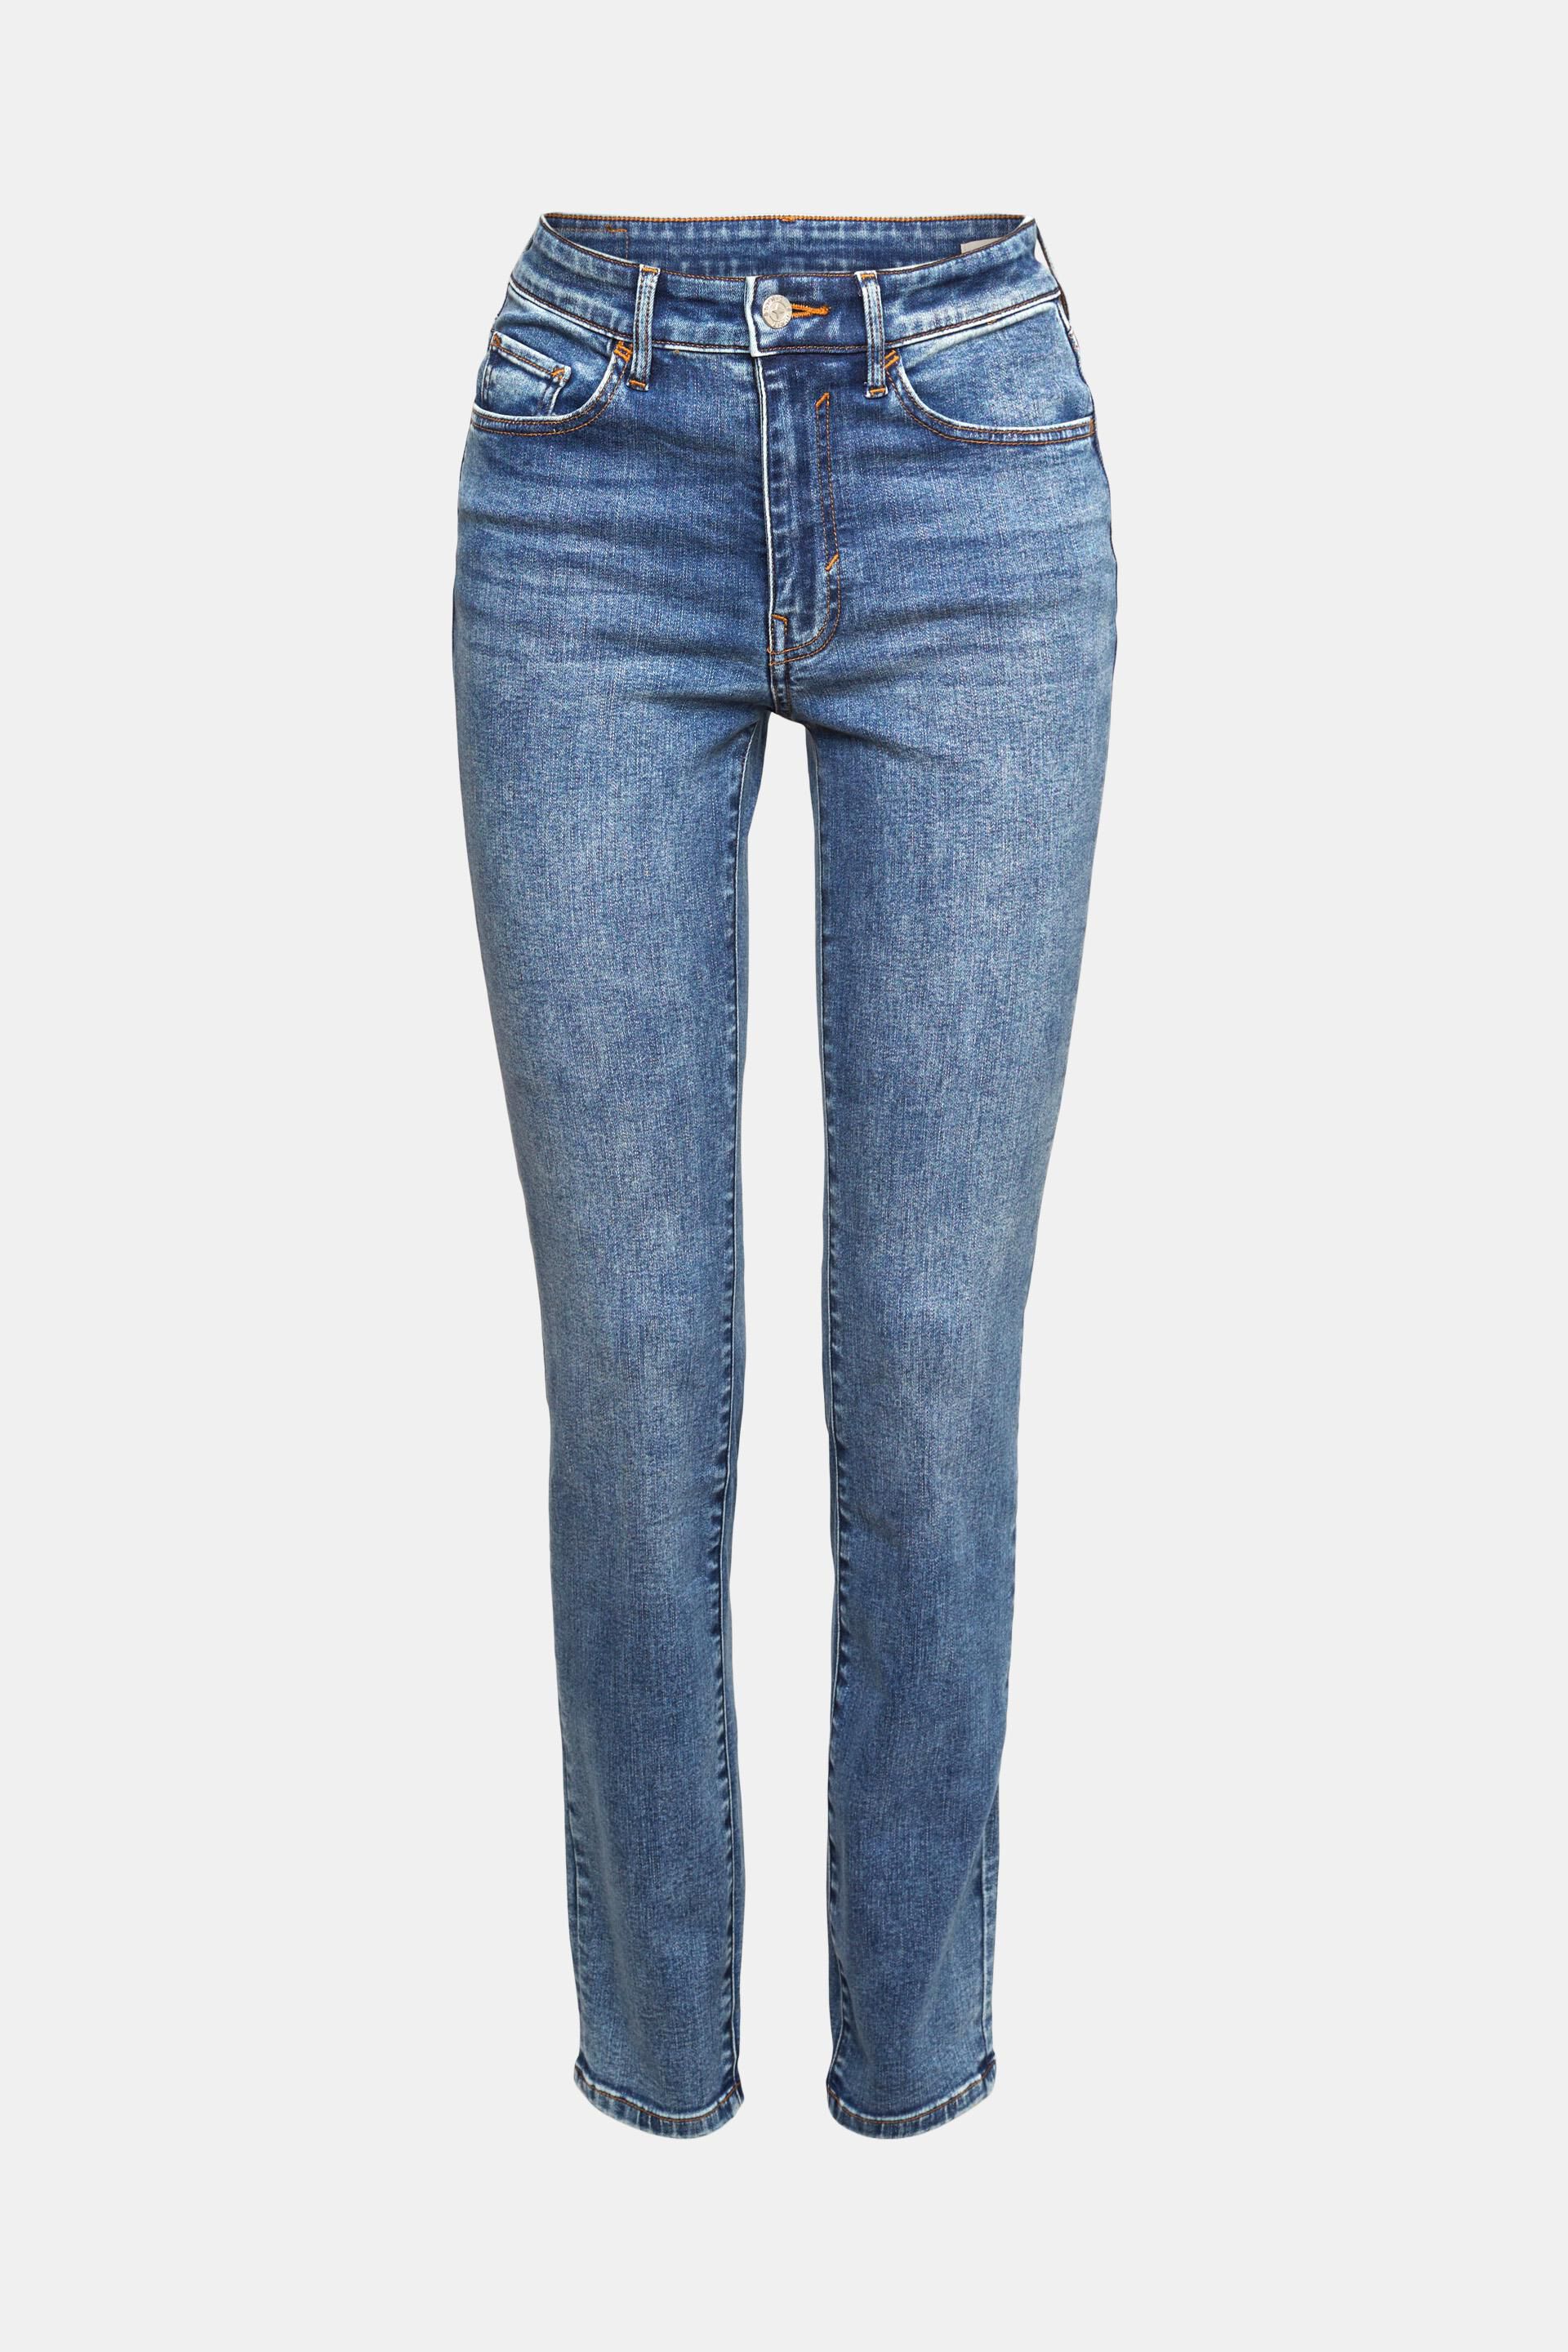 Zara Jegging & Skinny & Slim DAMEN Jeans Basisch Rabatt 99 % Dunkelblau 36 